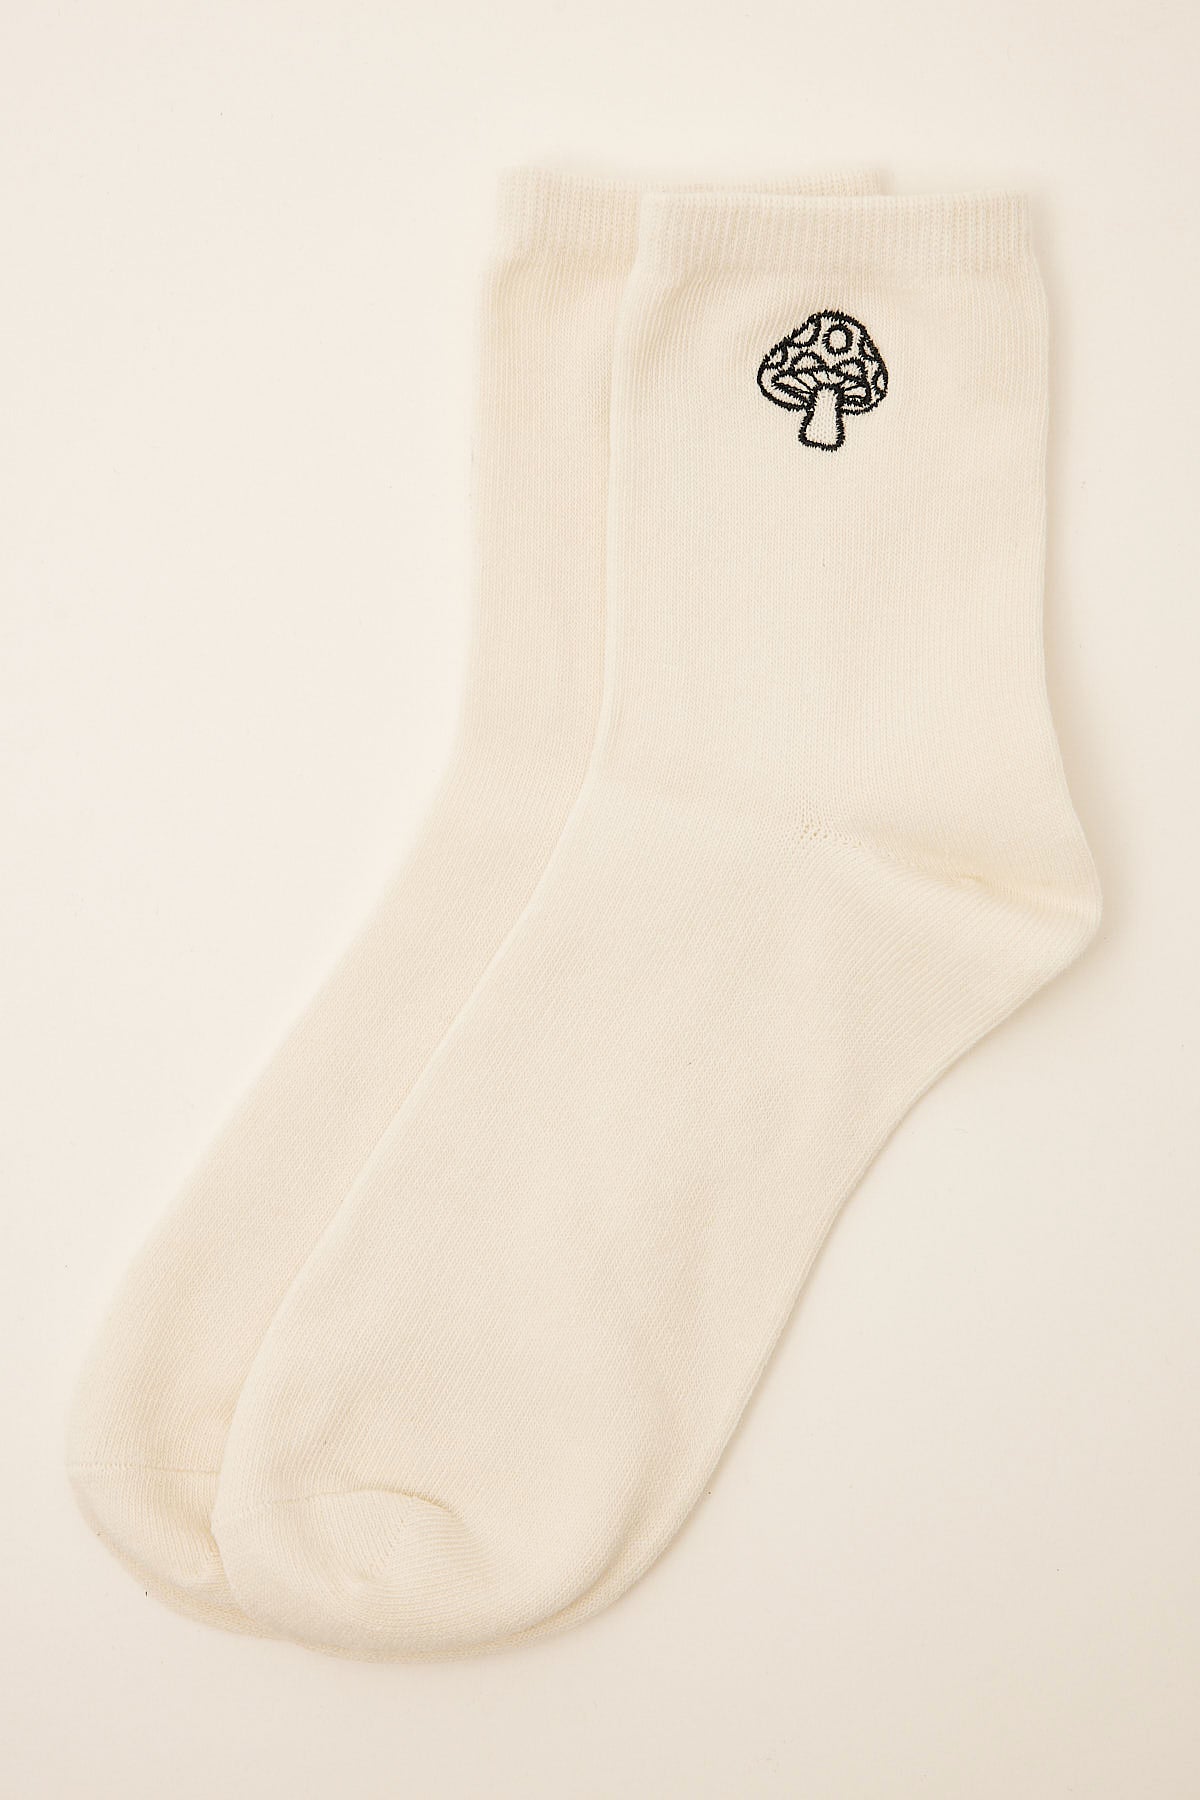 Token Mushroom Sock White